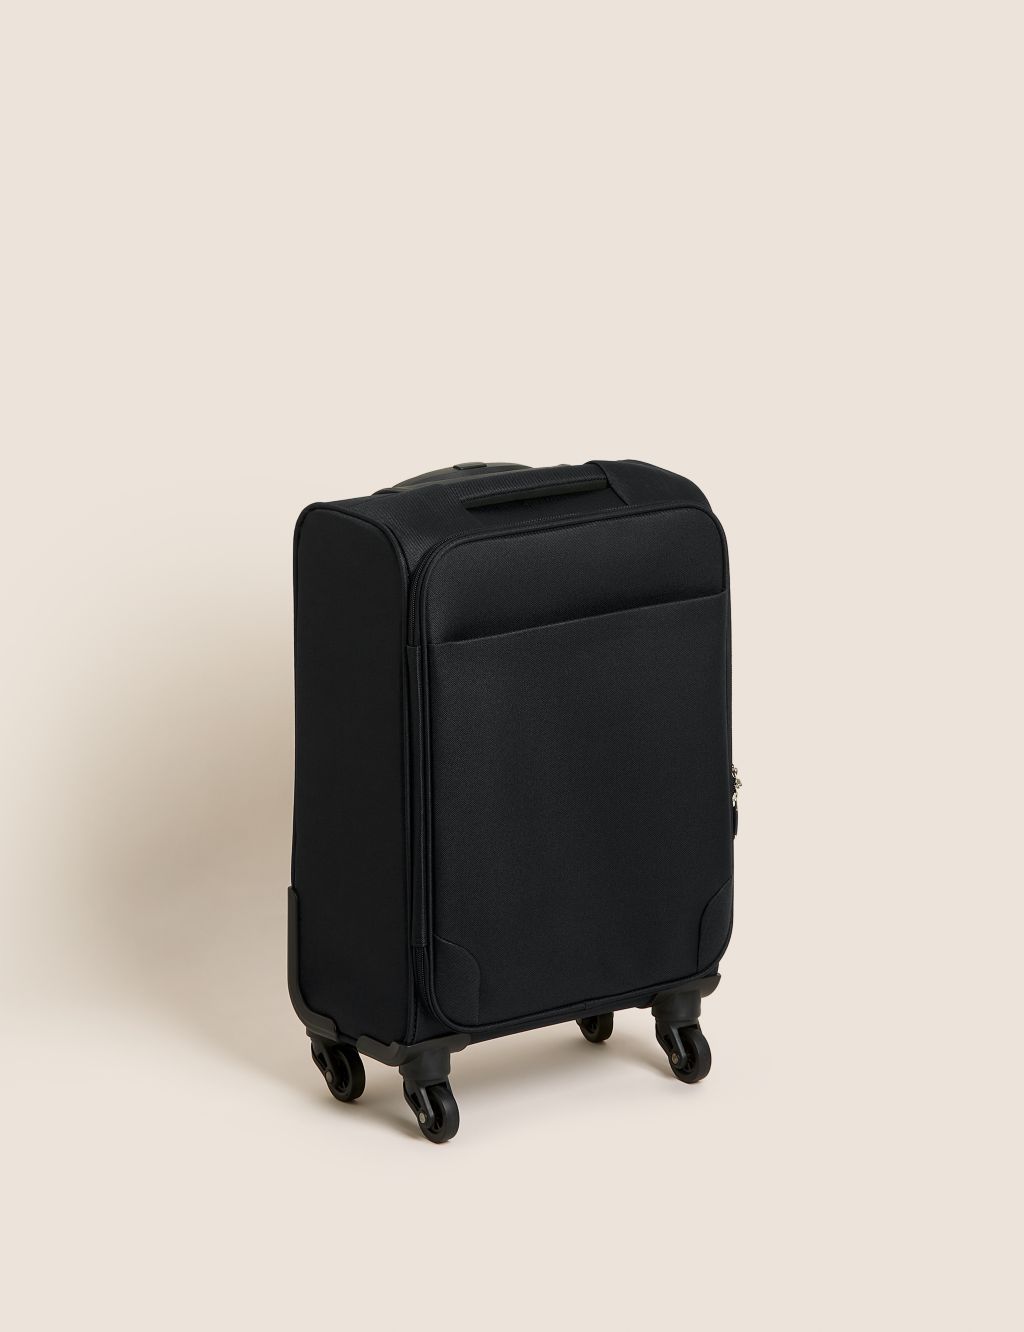 Palma 4 Wheel Soft Cabin Suitcase image 1